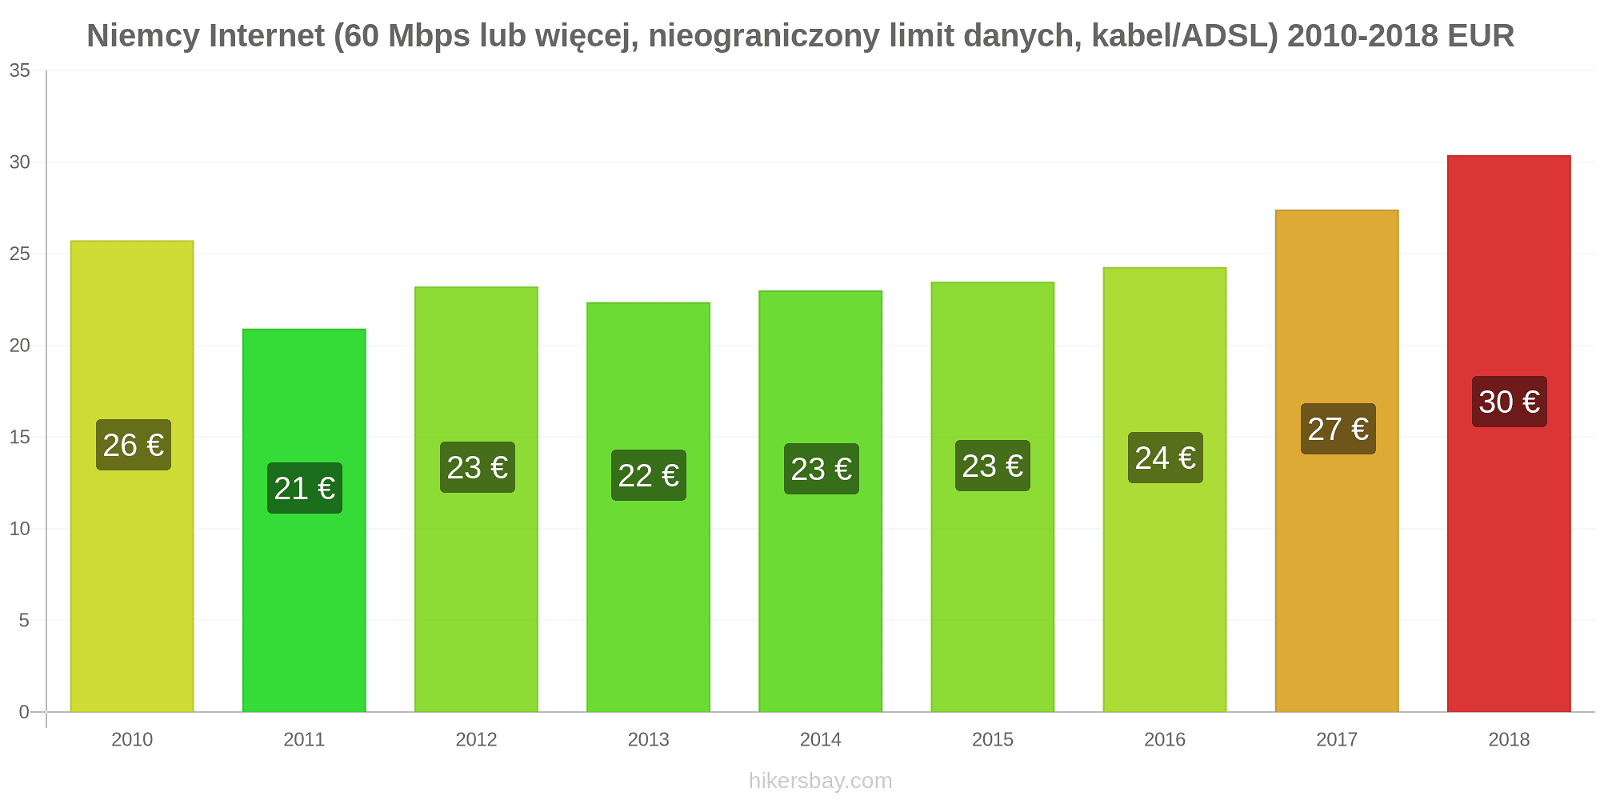 Niemcy zmiany cen Internet (60 Mbps lub więcej, nieograniczony limit danych, kabel/ADSL) hikersbay.com